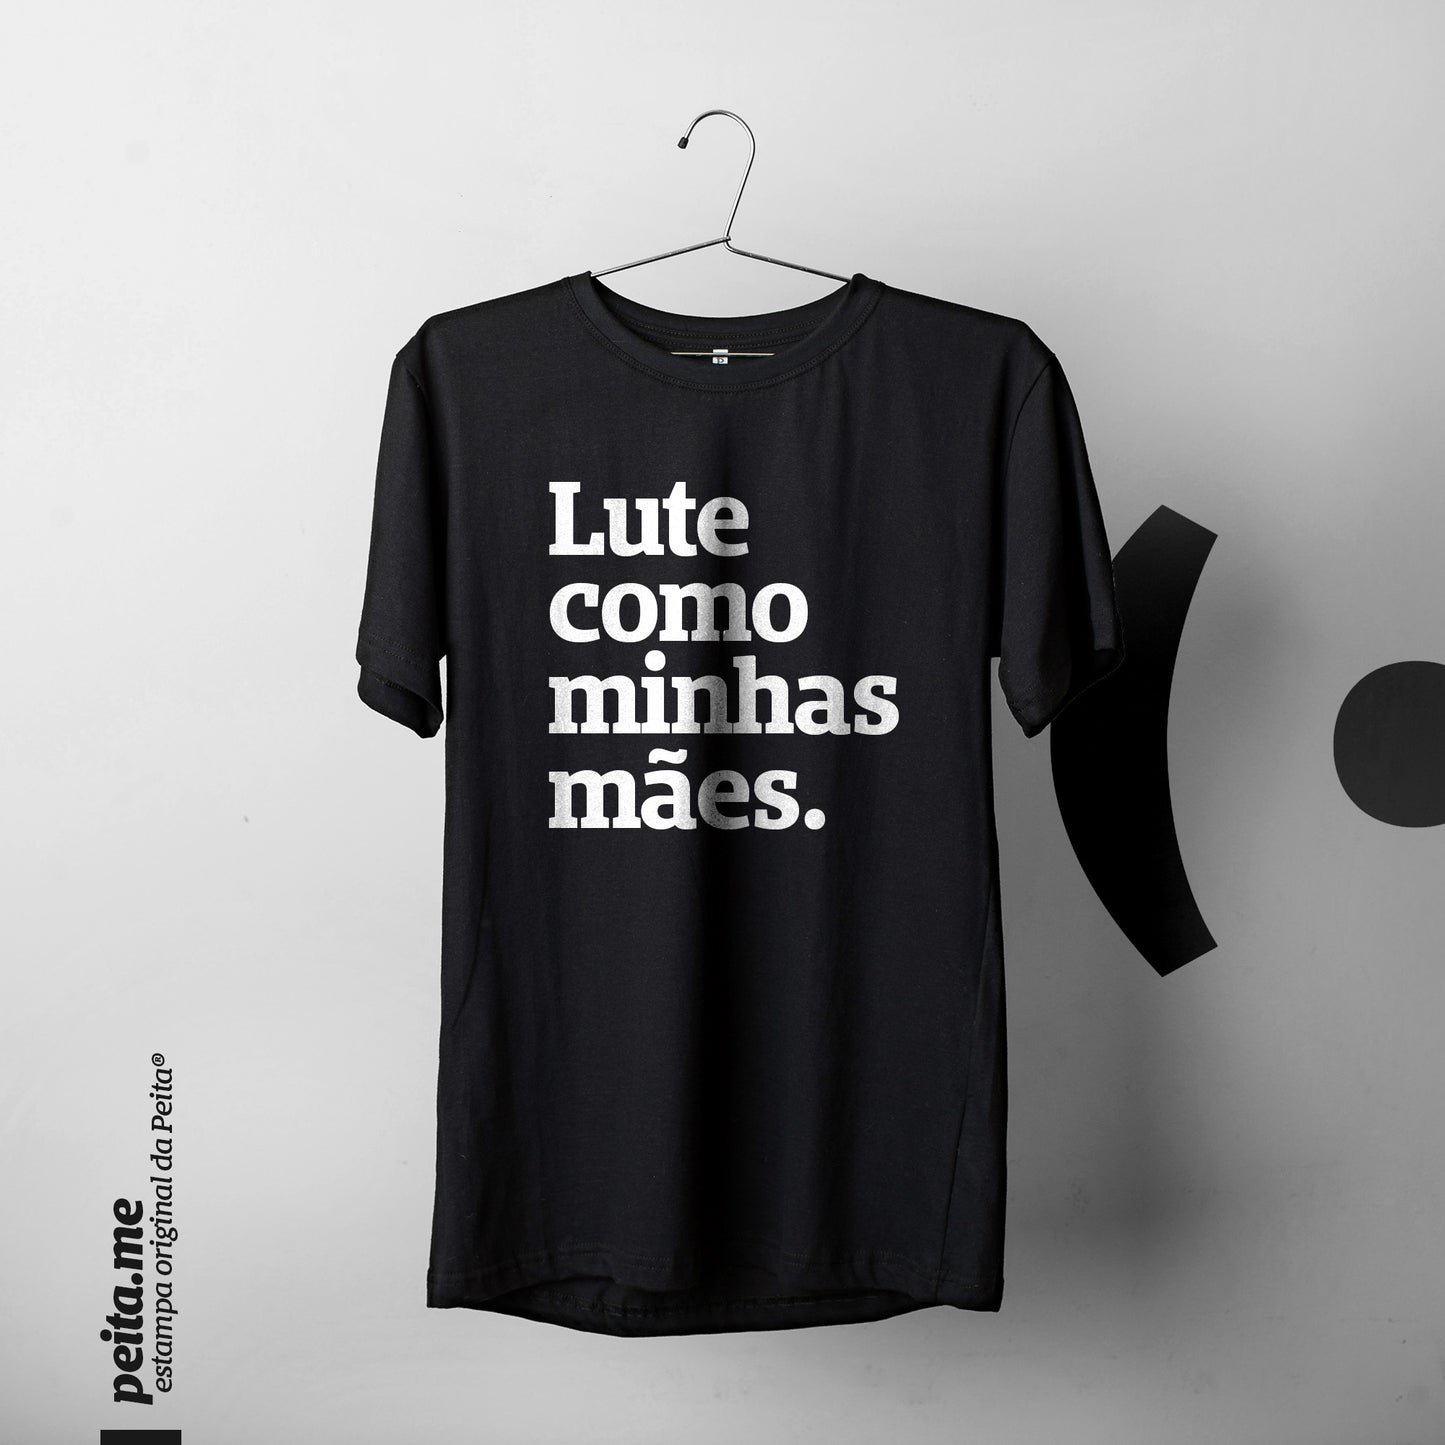 Foto colorida de uma camiseta preta com a frase Lute como minhas mães em branco, pendurada no cabide. Fundo cinza